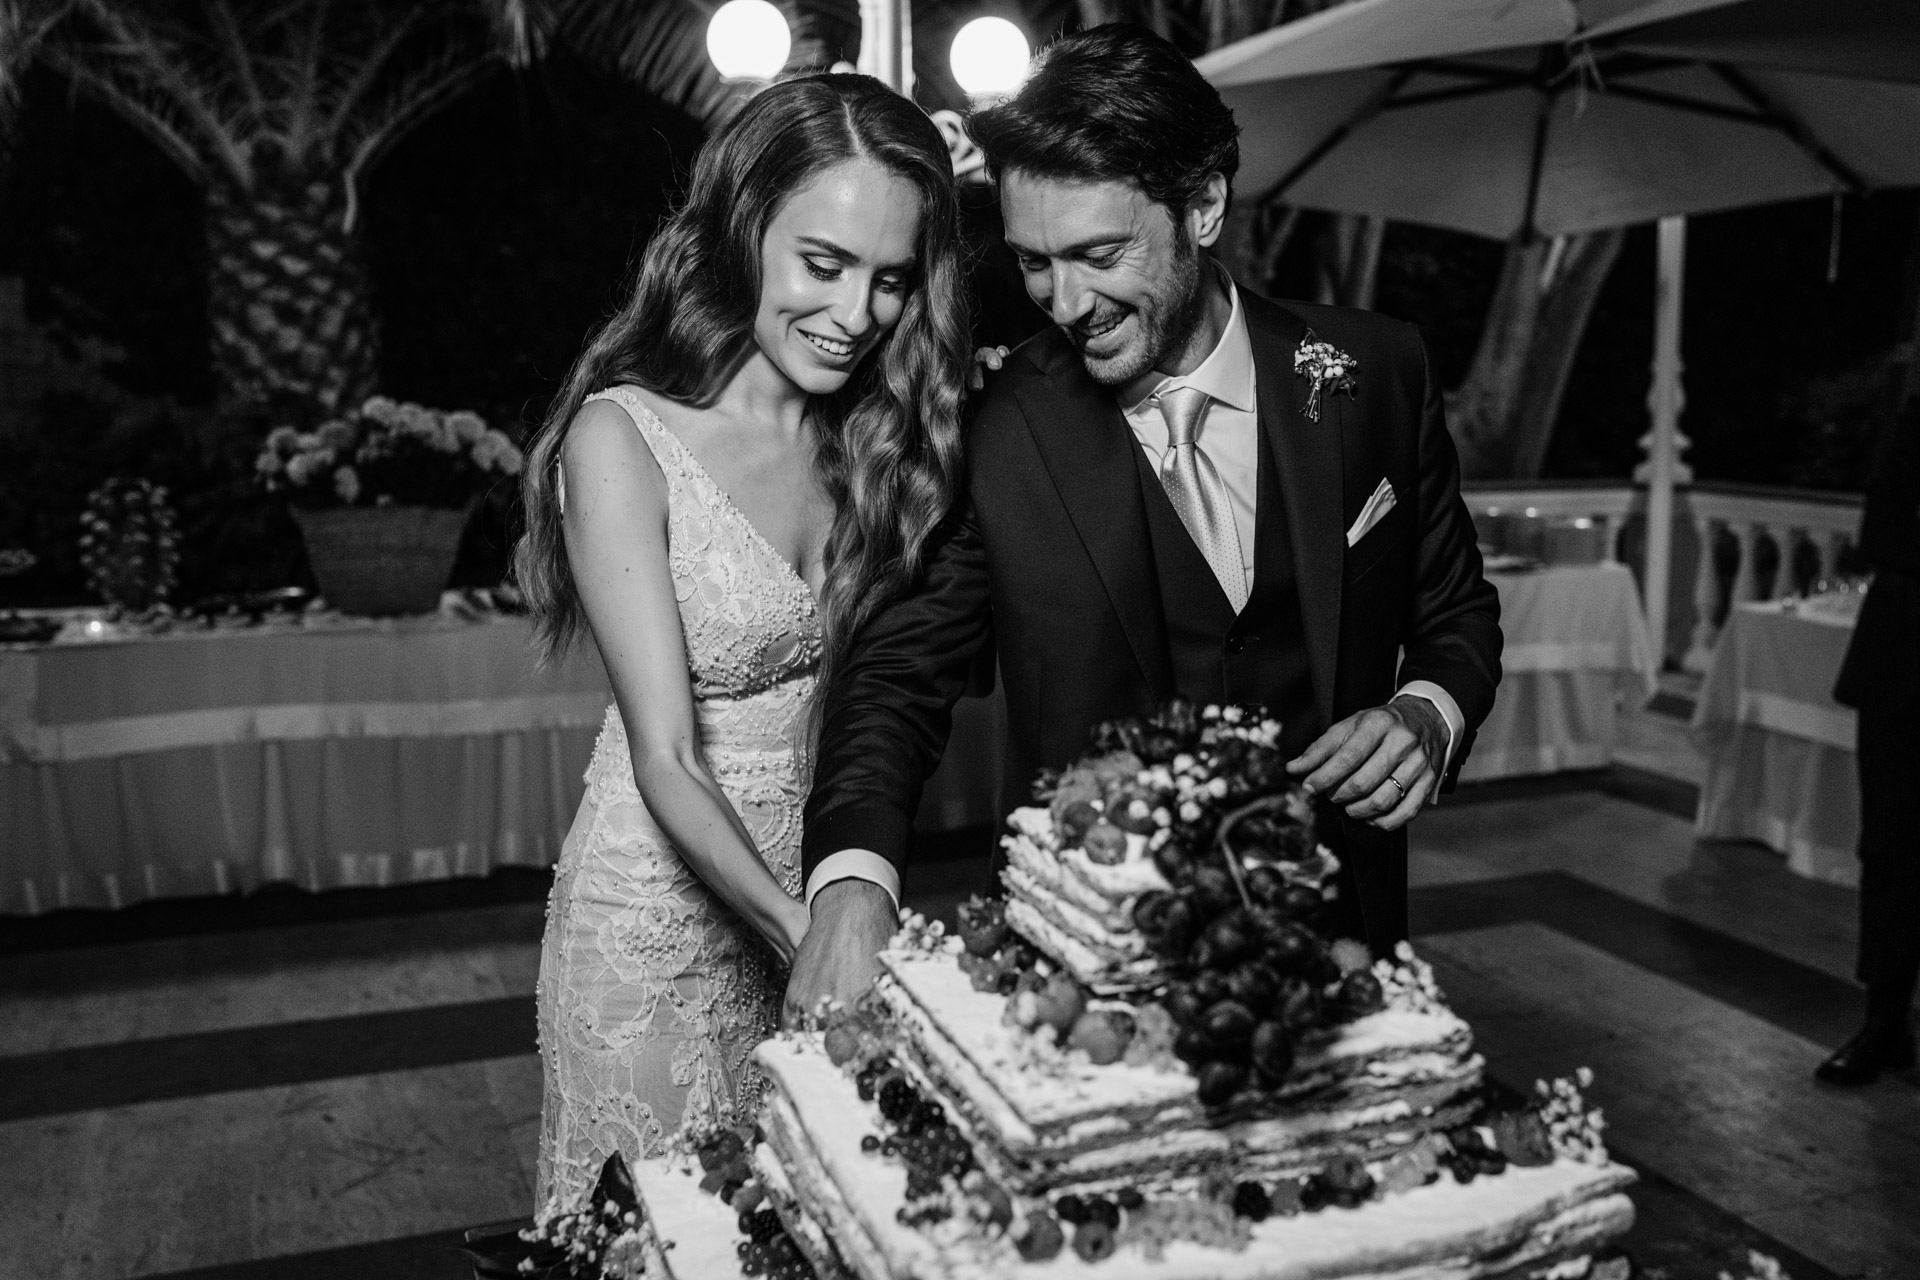 WEDDING CAKE IN SORRENTO